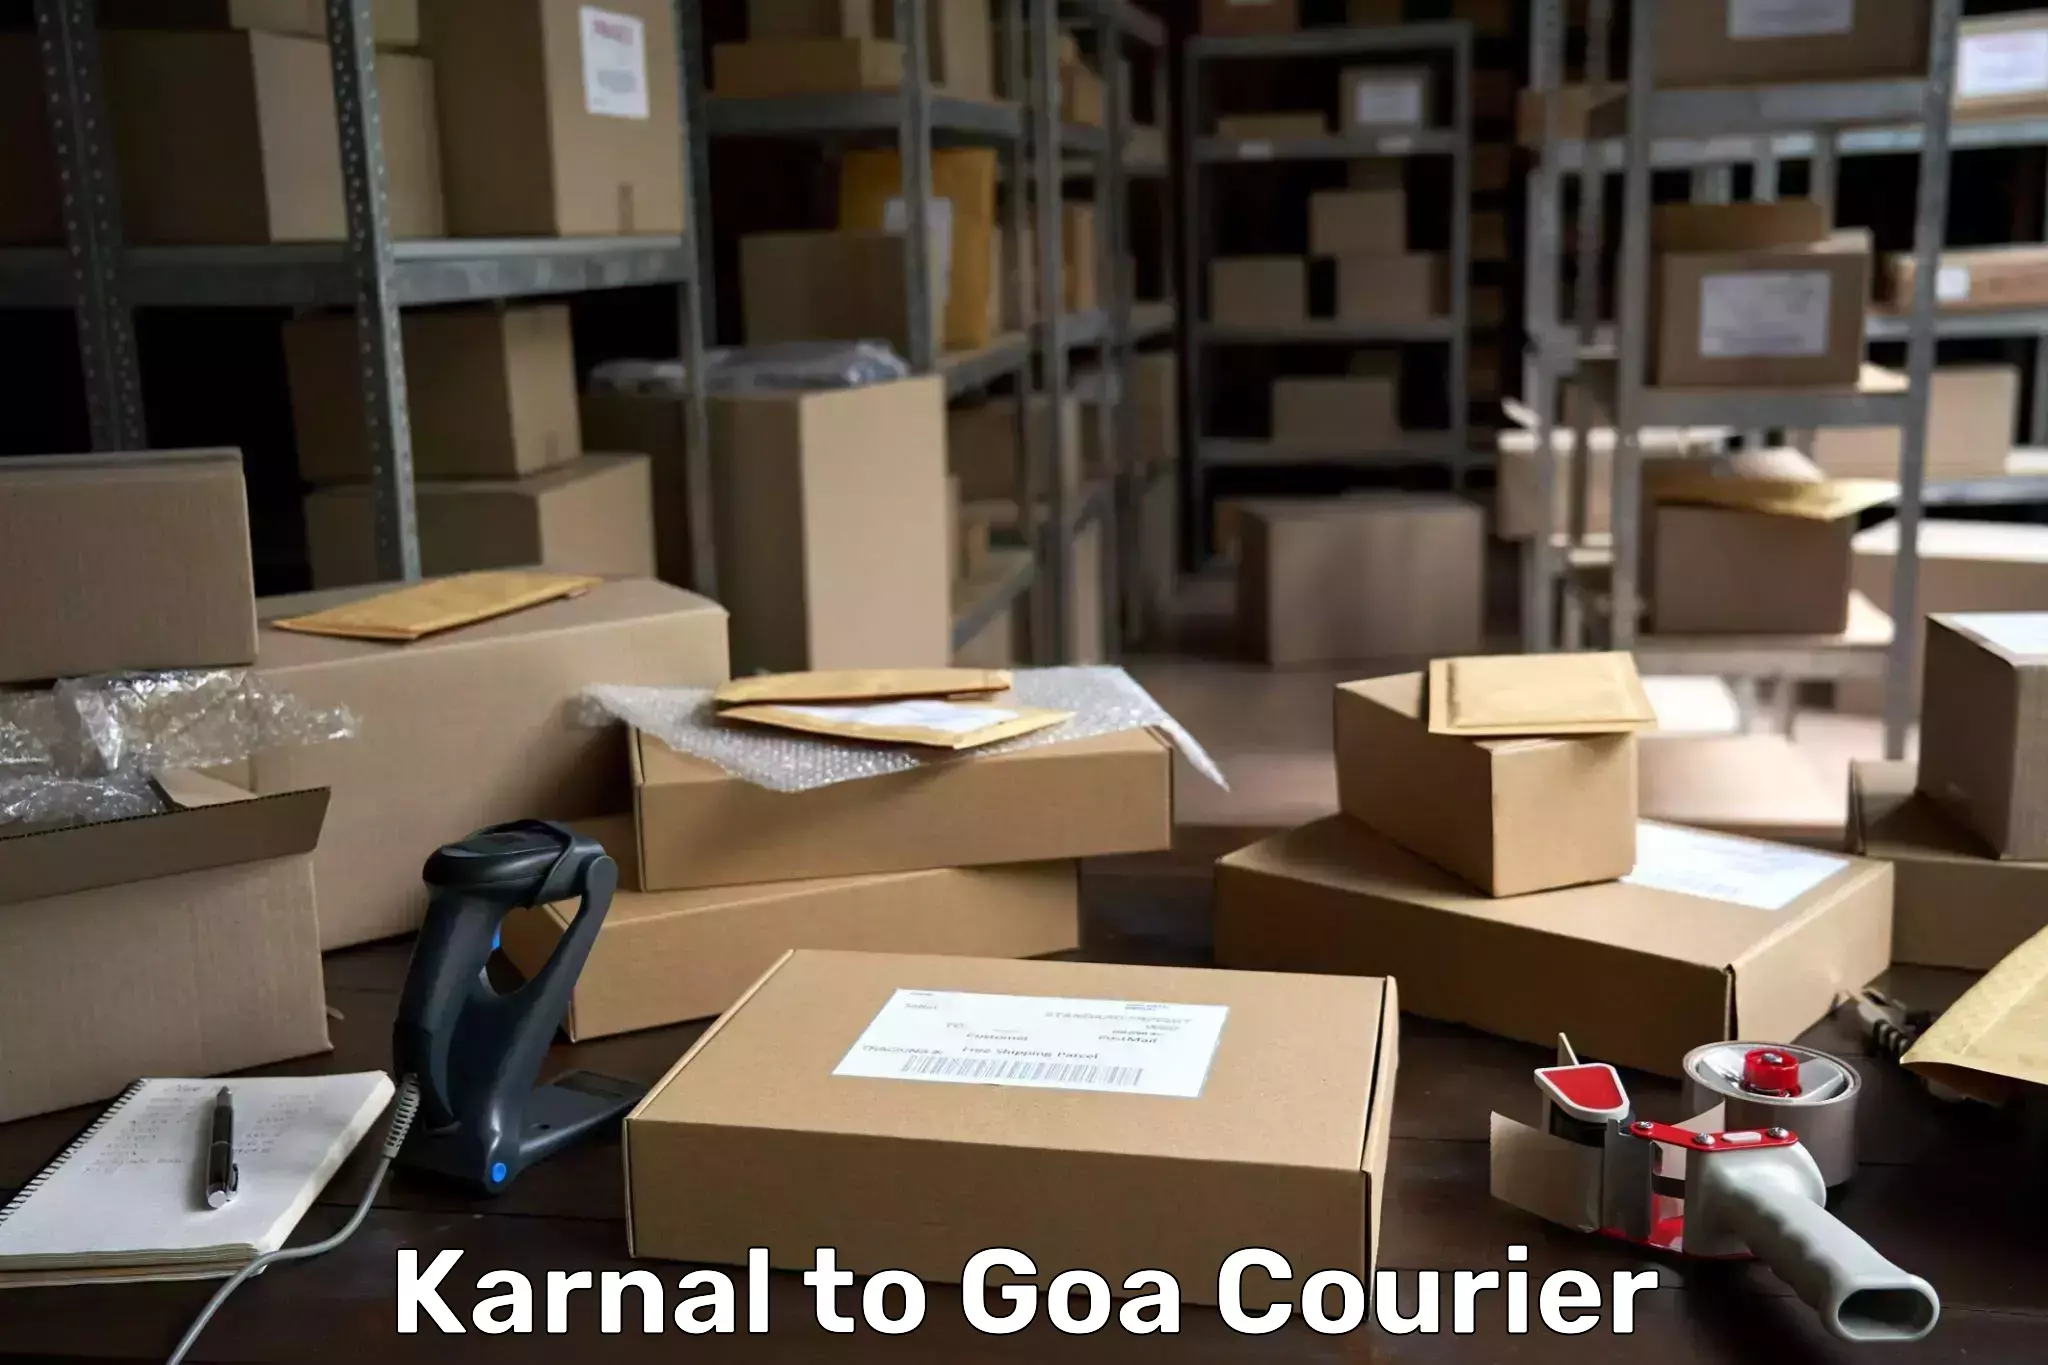 State-of-the-art courier technology Karnal to Vasco da Gama